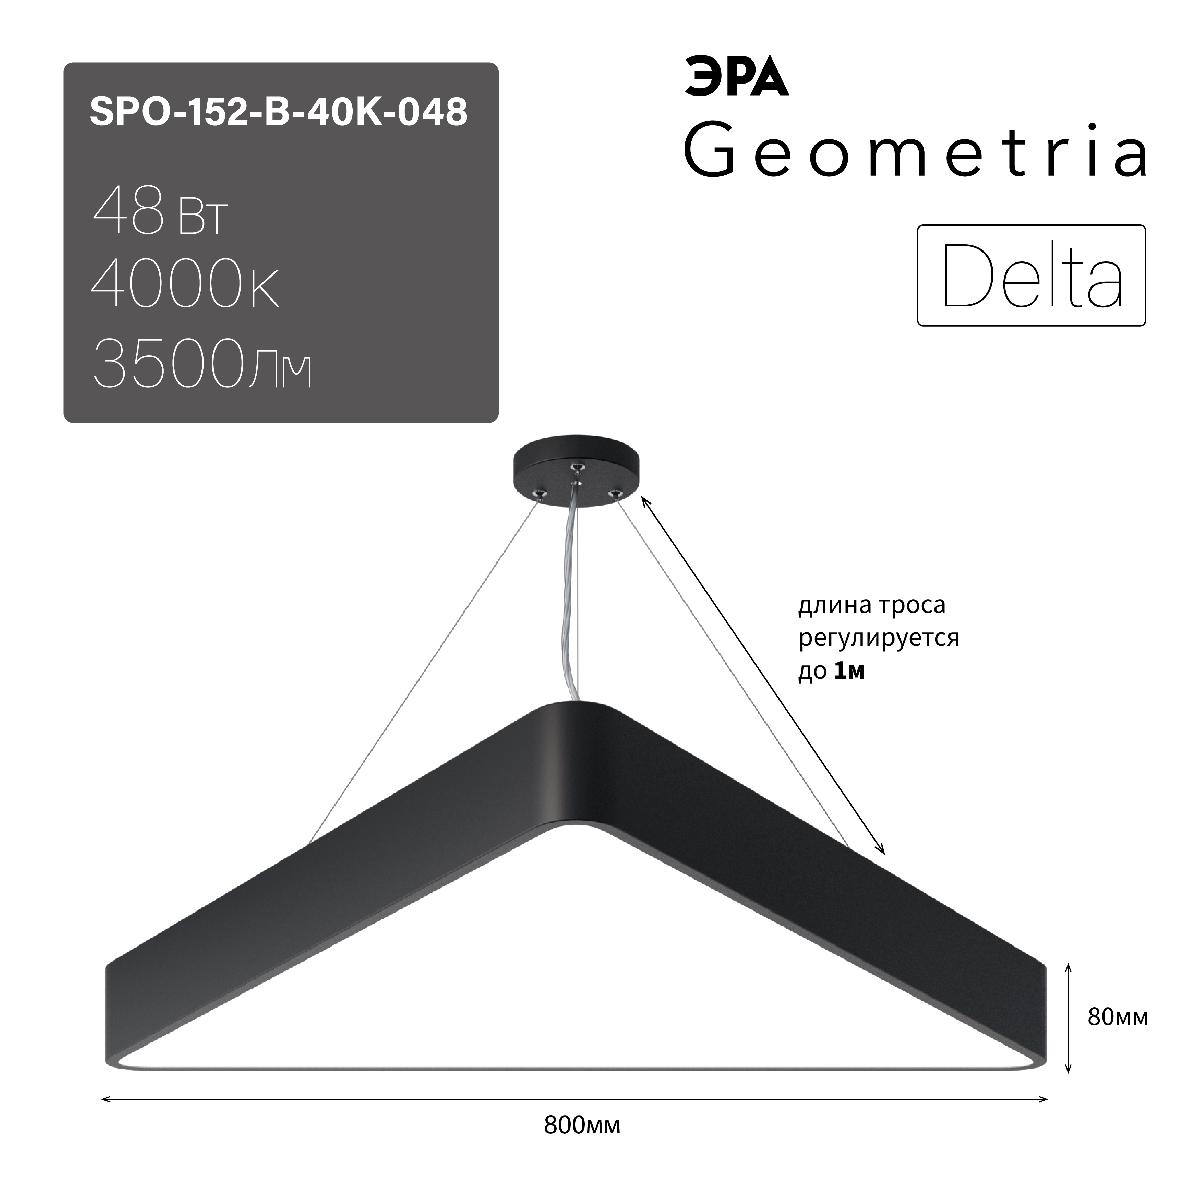 Подвесной светодиодный cветильник Geometria ЭРА Delta SPO-152-B-40K-048 Б0050577